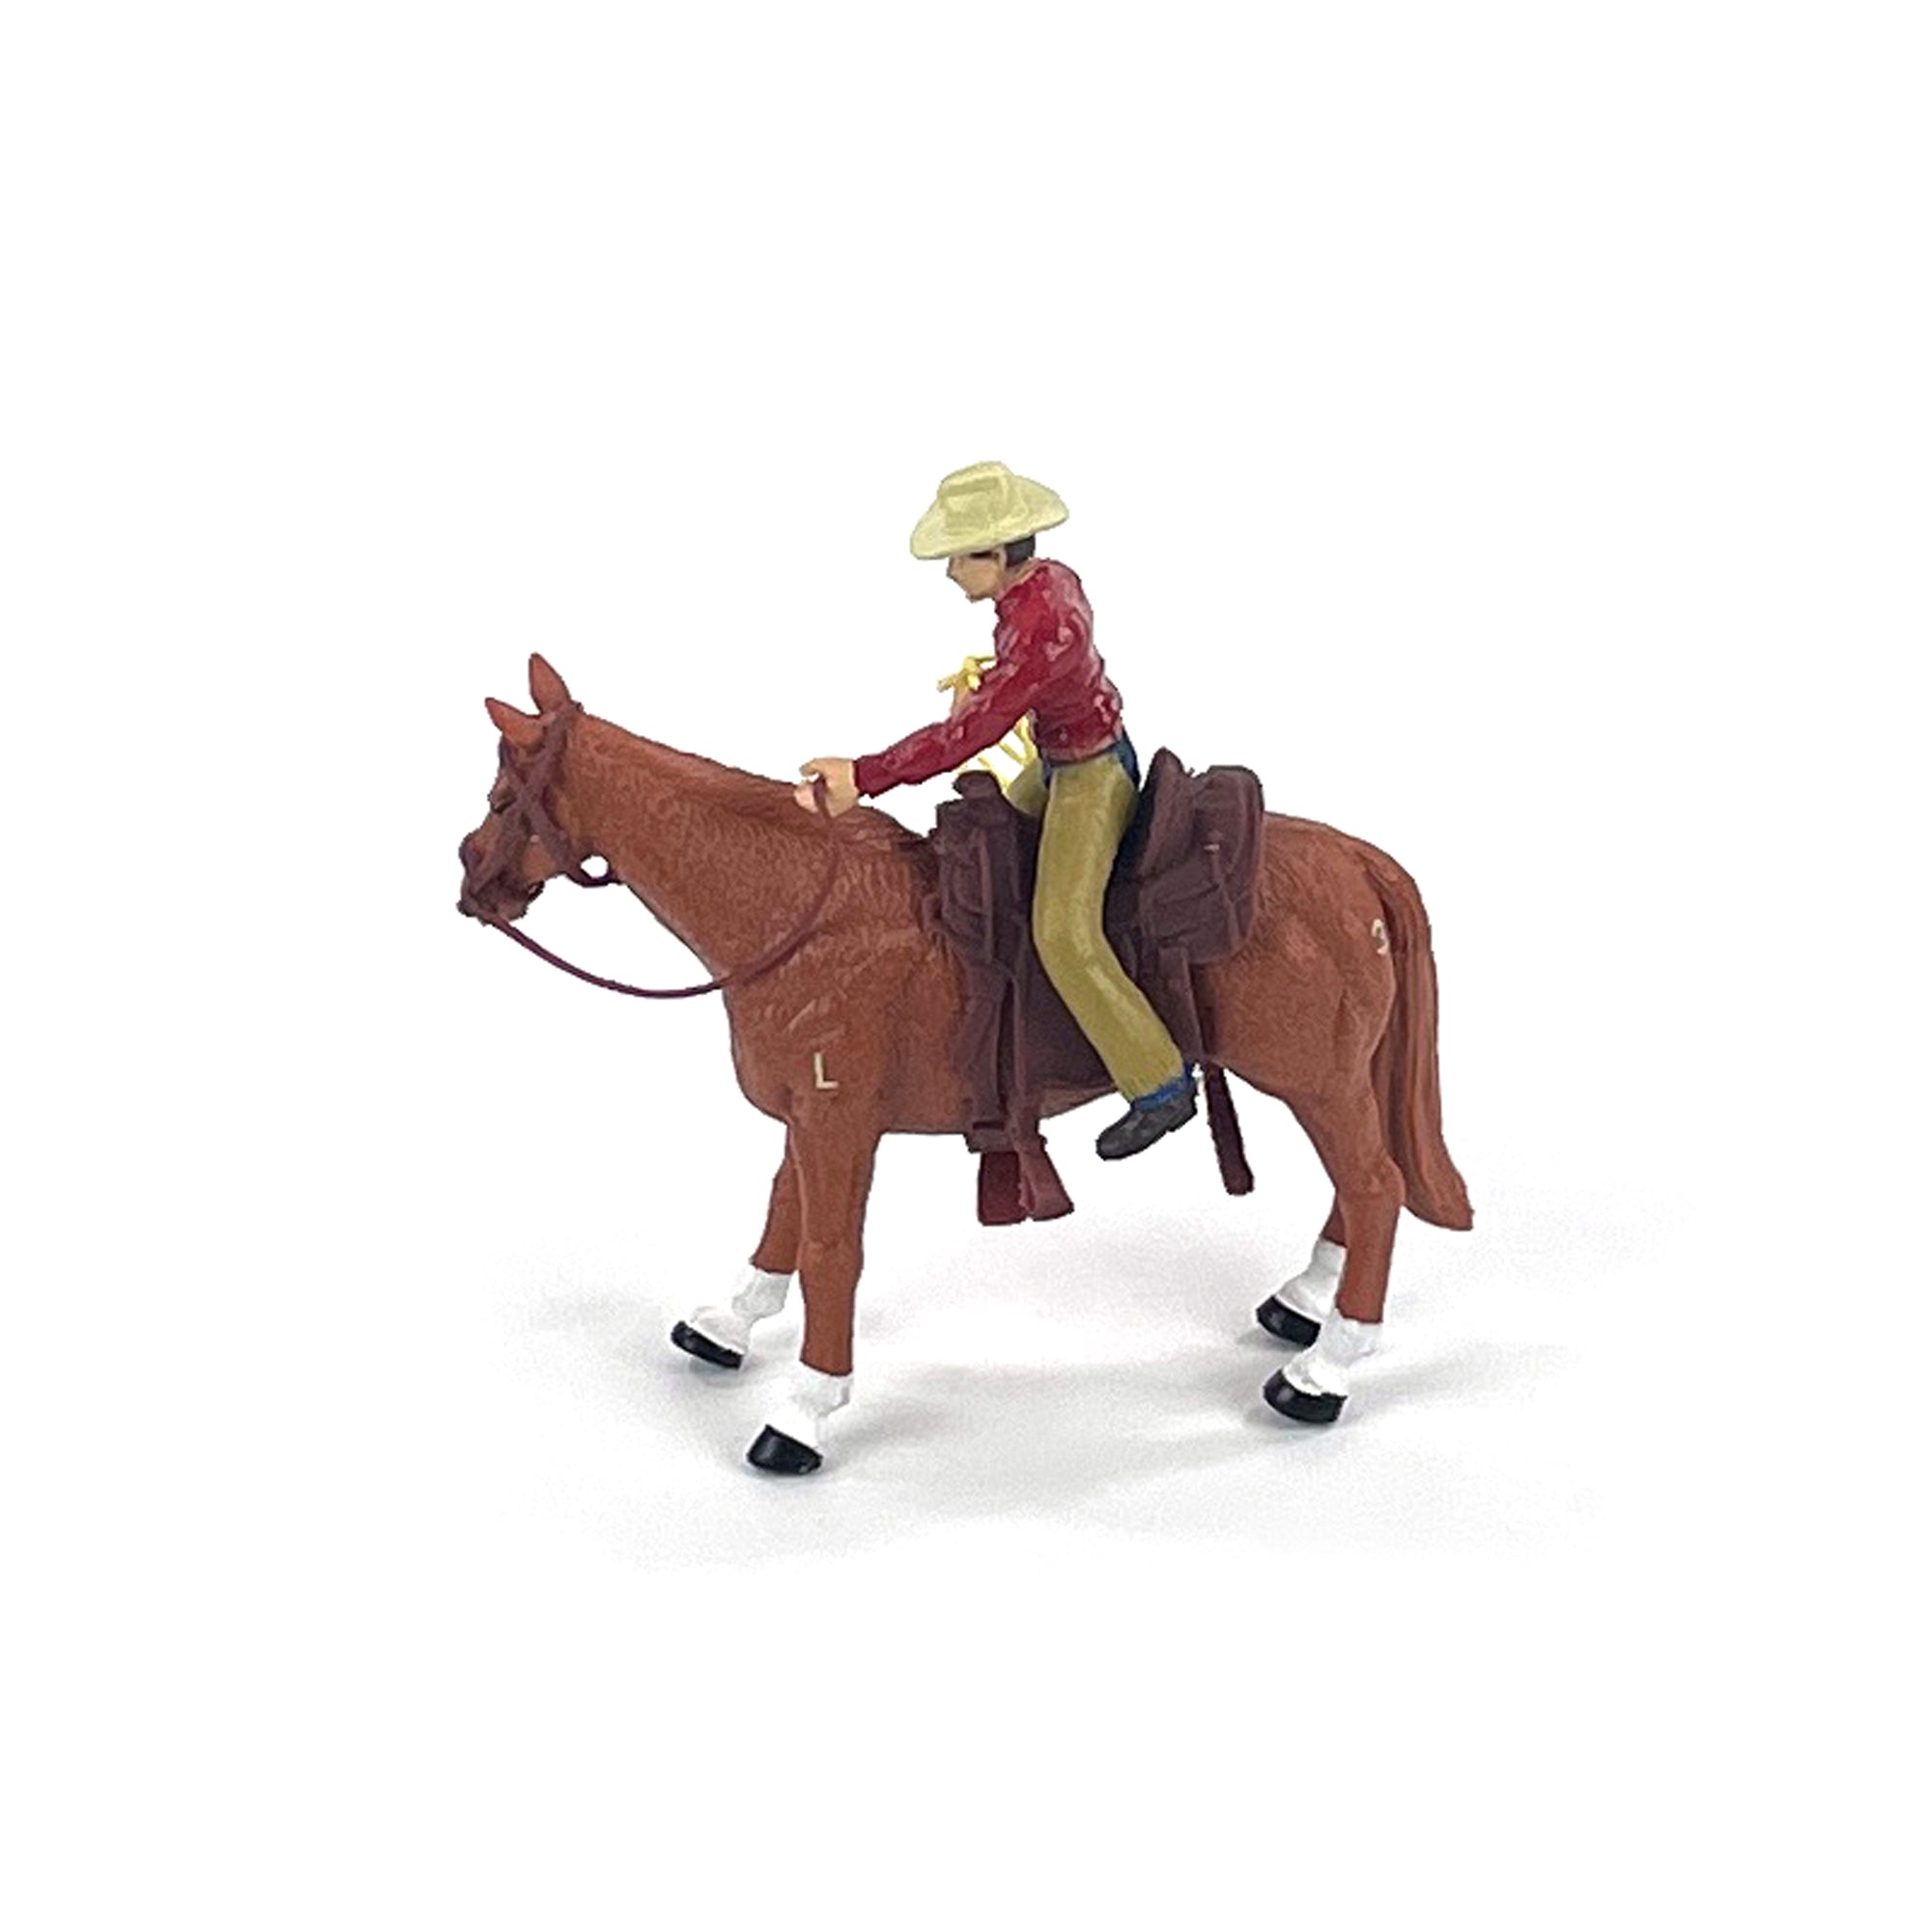 Four Sixes Ranch Cowboy & Quarter Horse | bigcountrytoys.com